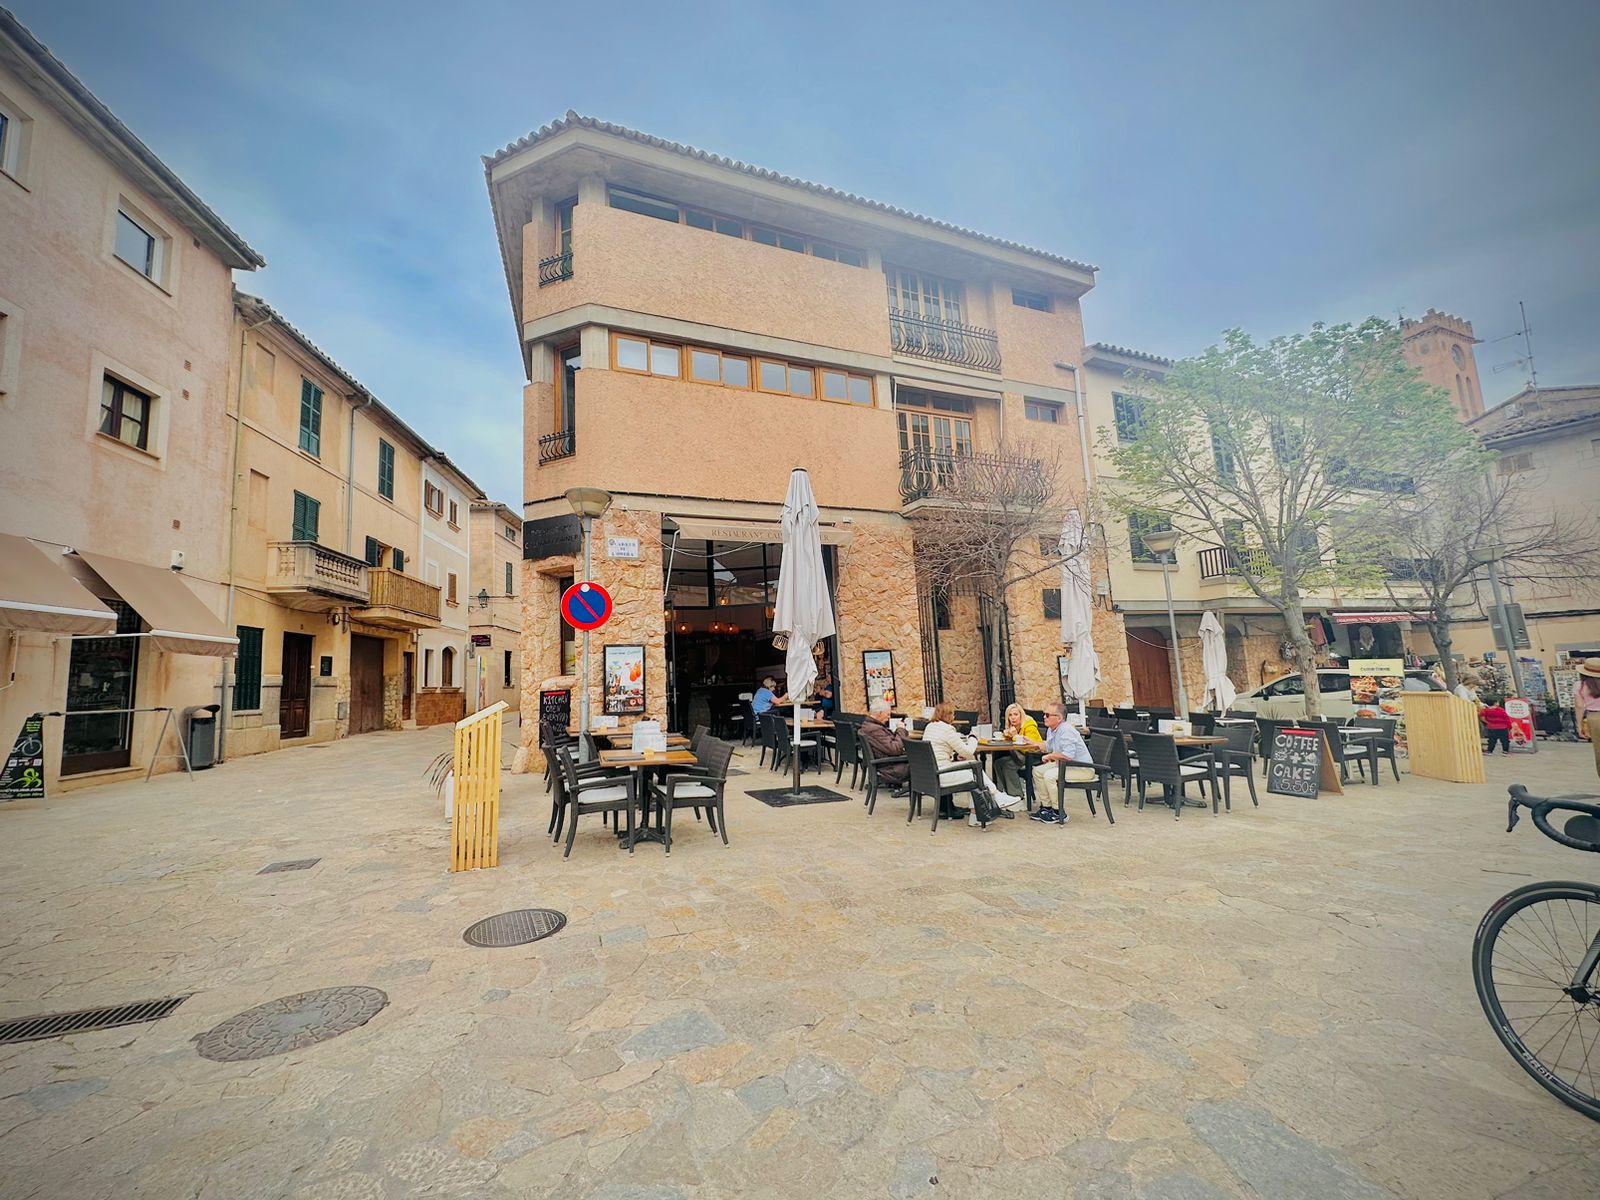 Images Restaurant Calvari Corner